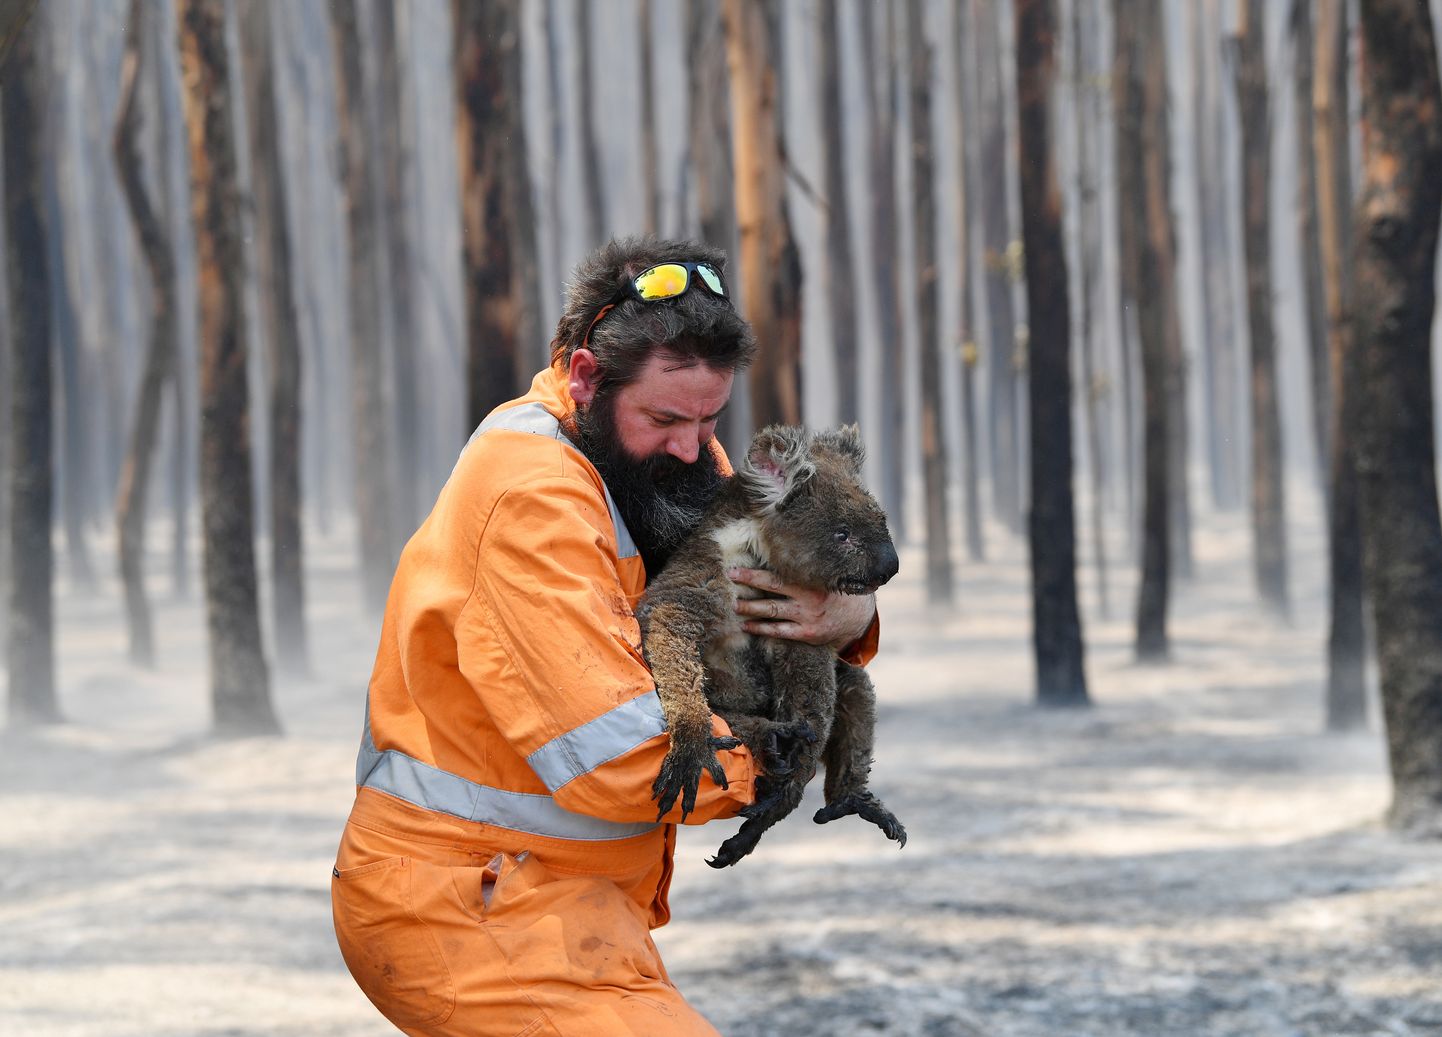 Январь 2020 года. От пожаров в Австралии погибли сотни миллионов животных.